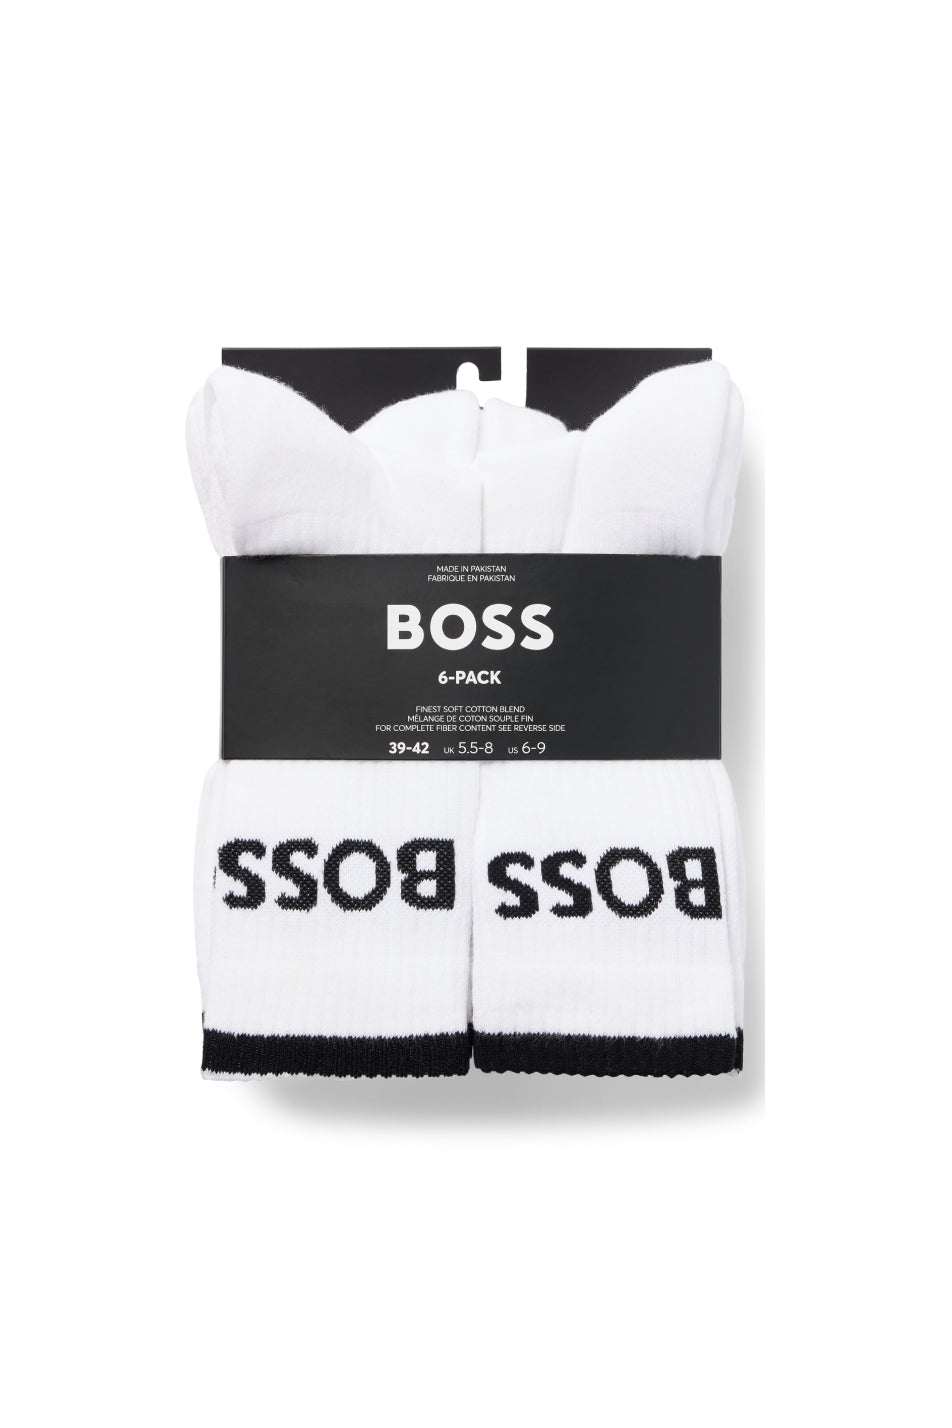 BOSS 6 Pack Men's Stripe Sock